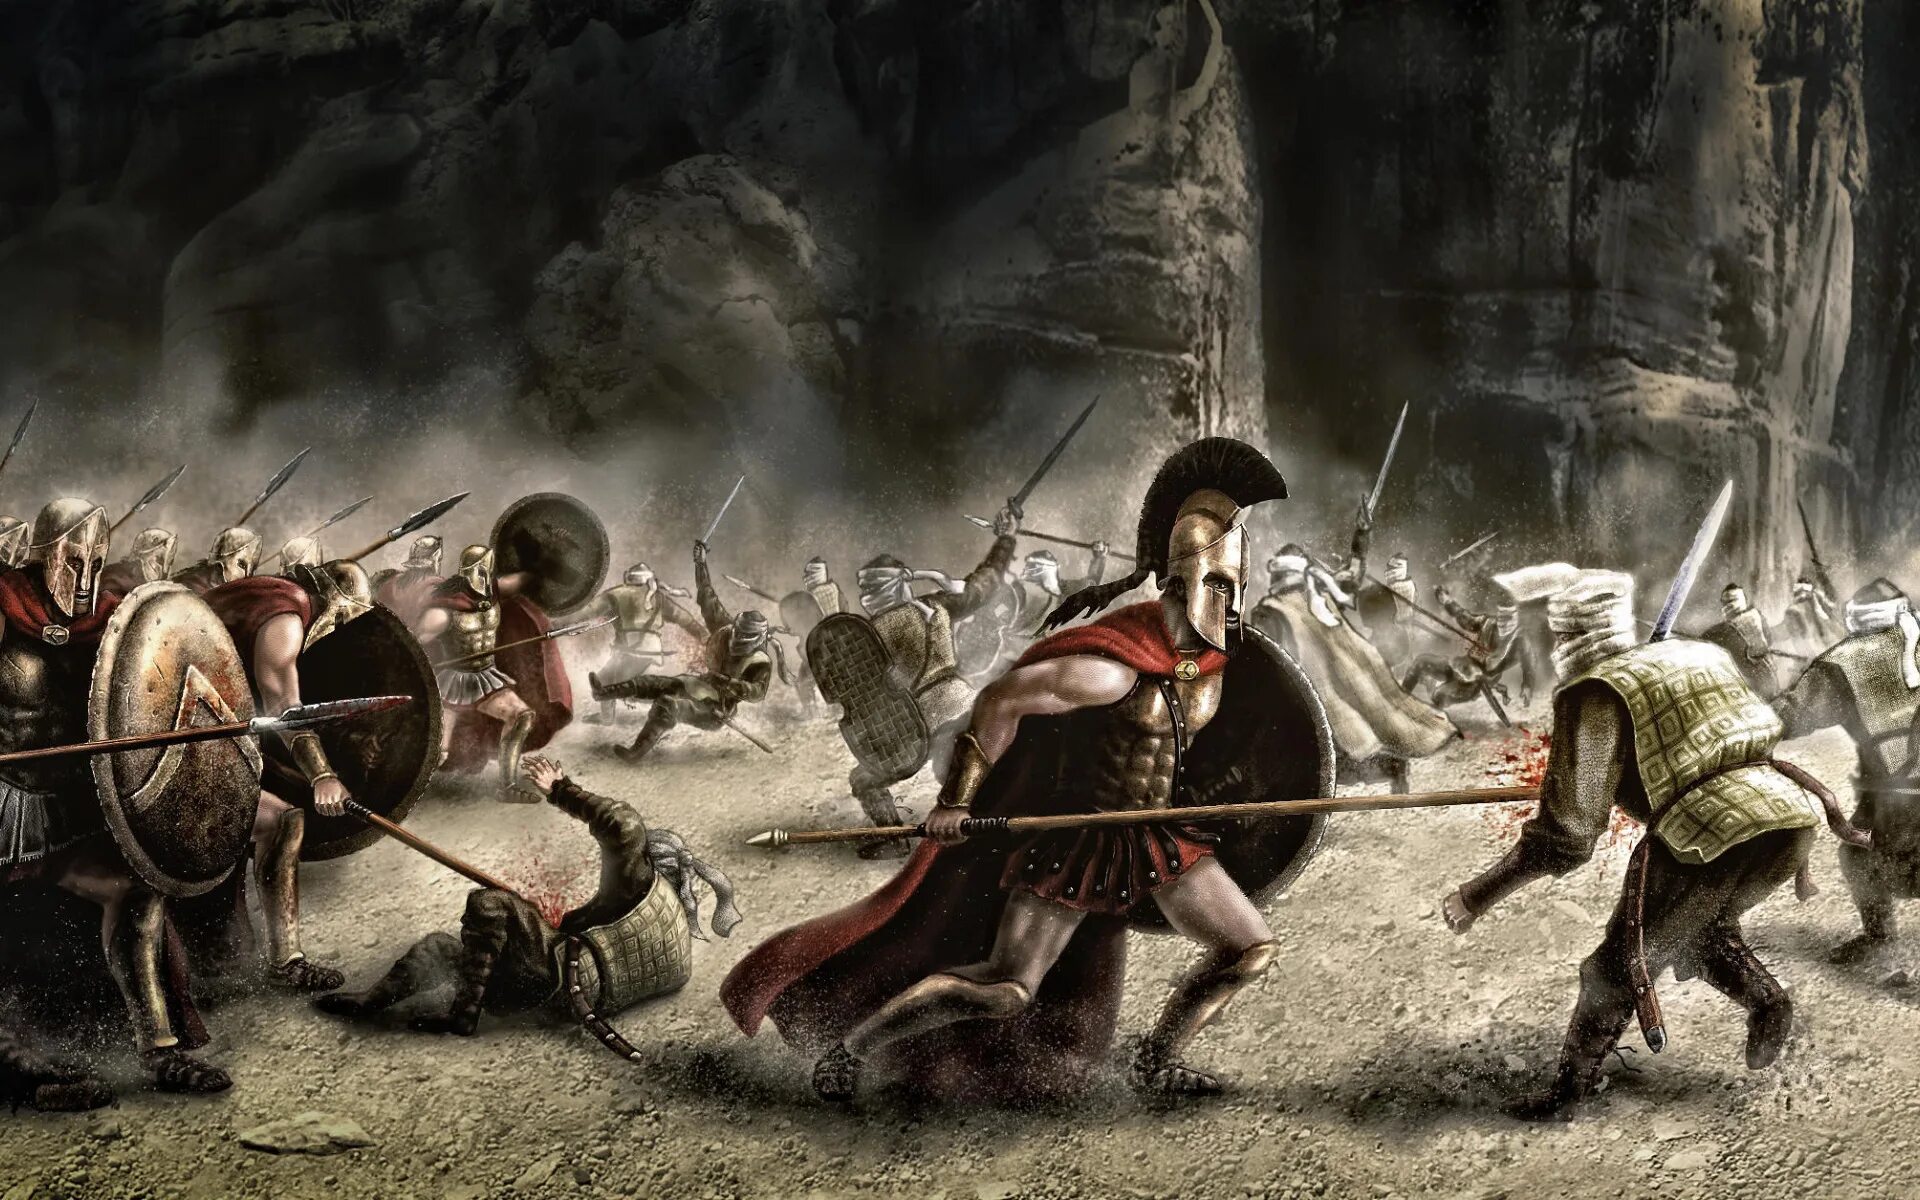 Сильнейших воинов истории. Фермопильское сражение 300 спартанцев. 300 Спартанцев в Фермопилах. Армия персов 300 спартанцев. 300 Спартанцев бой.